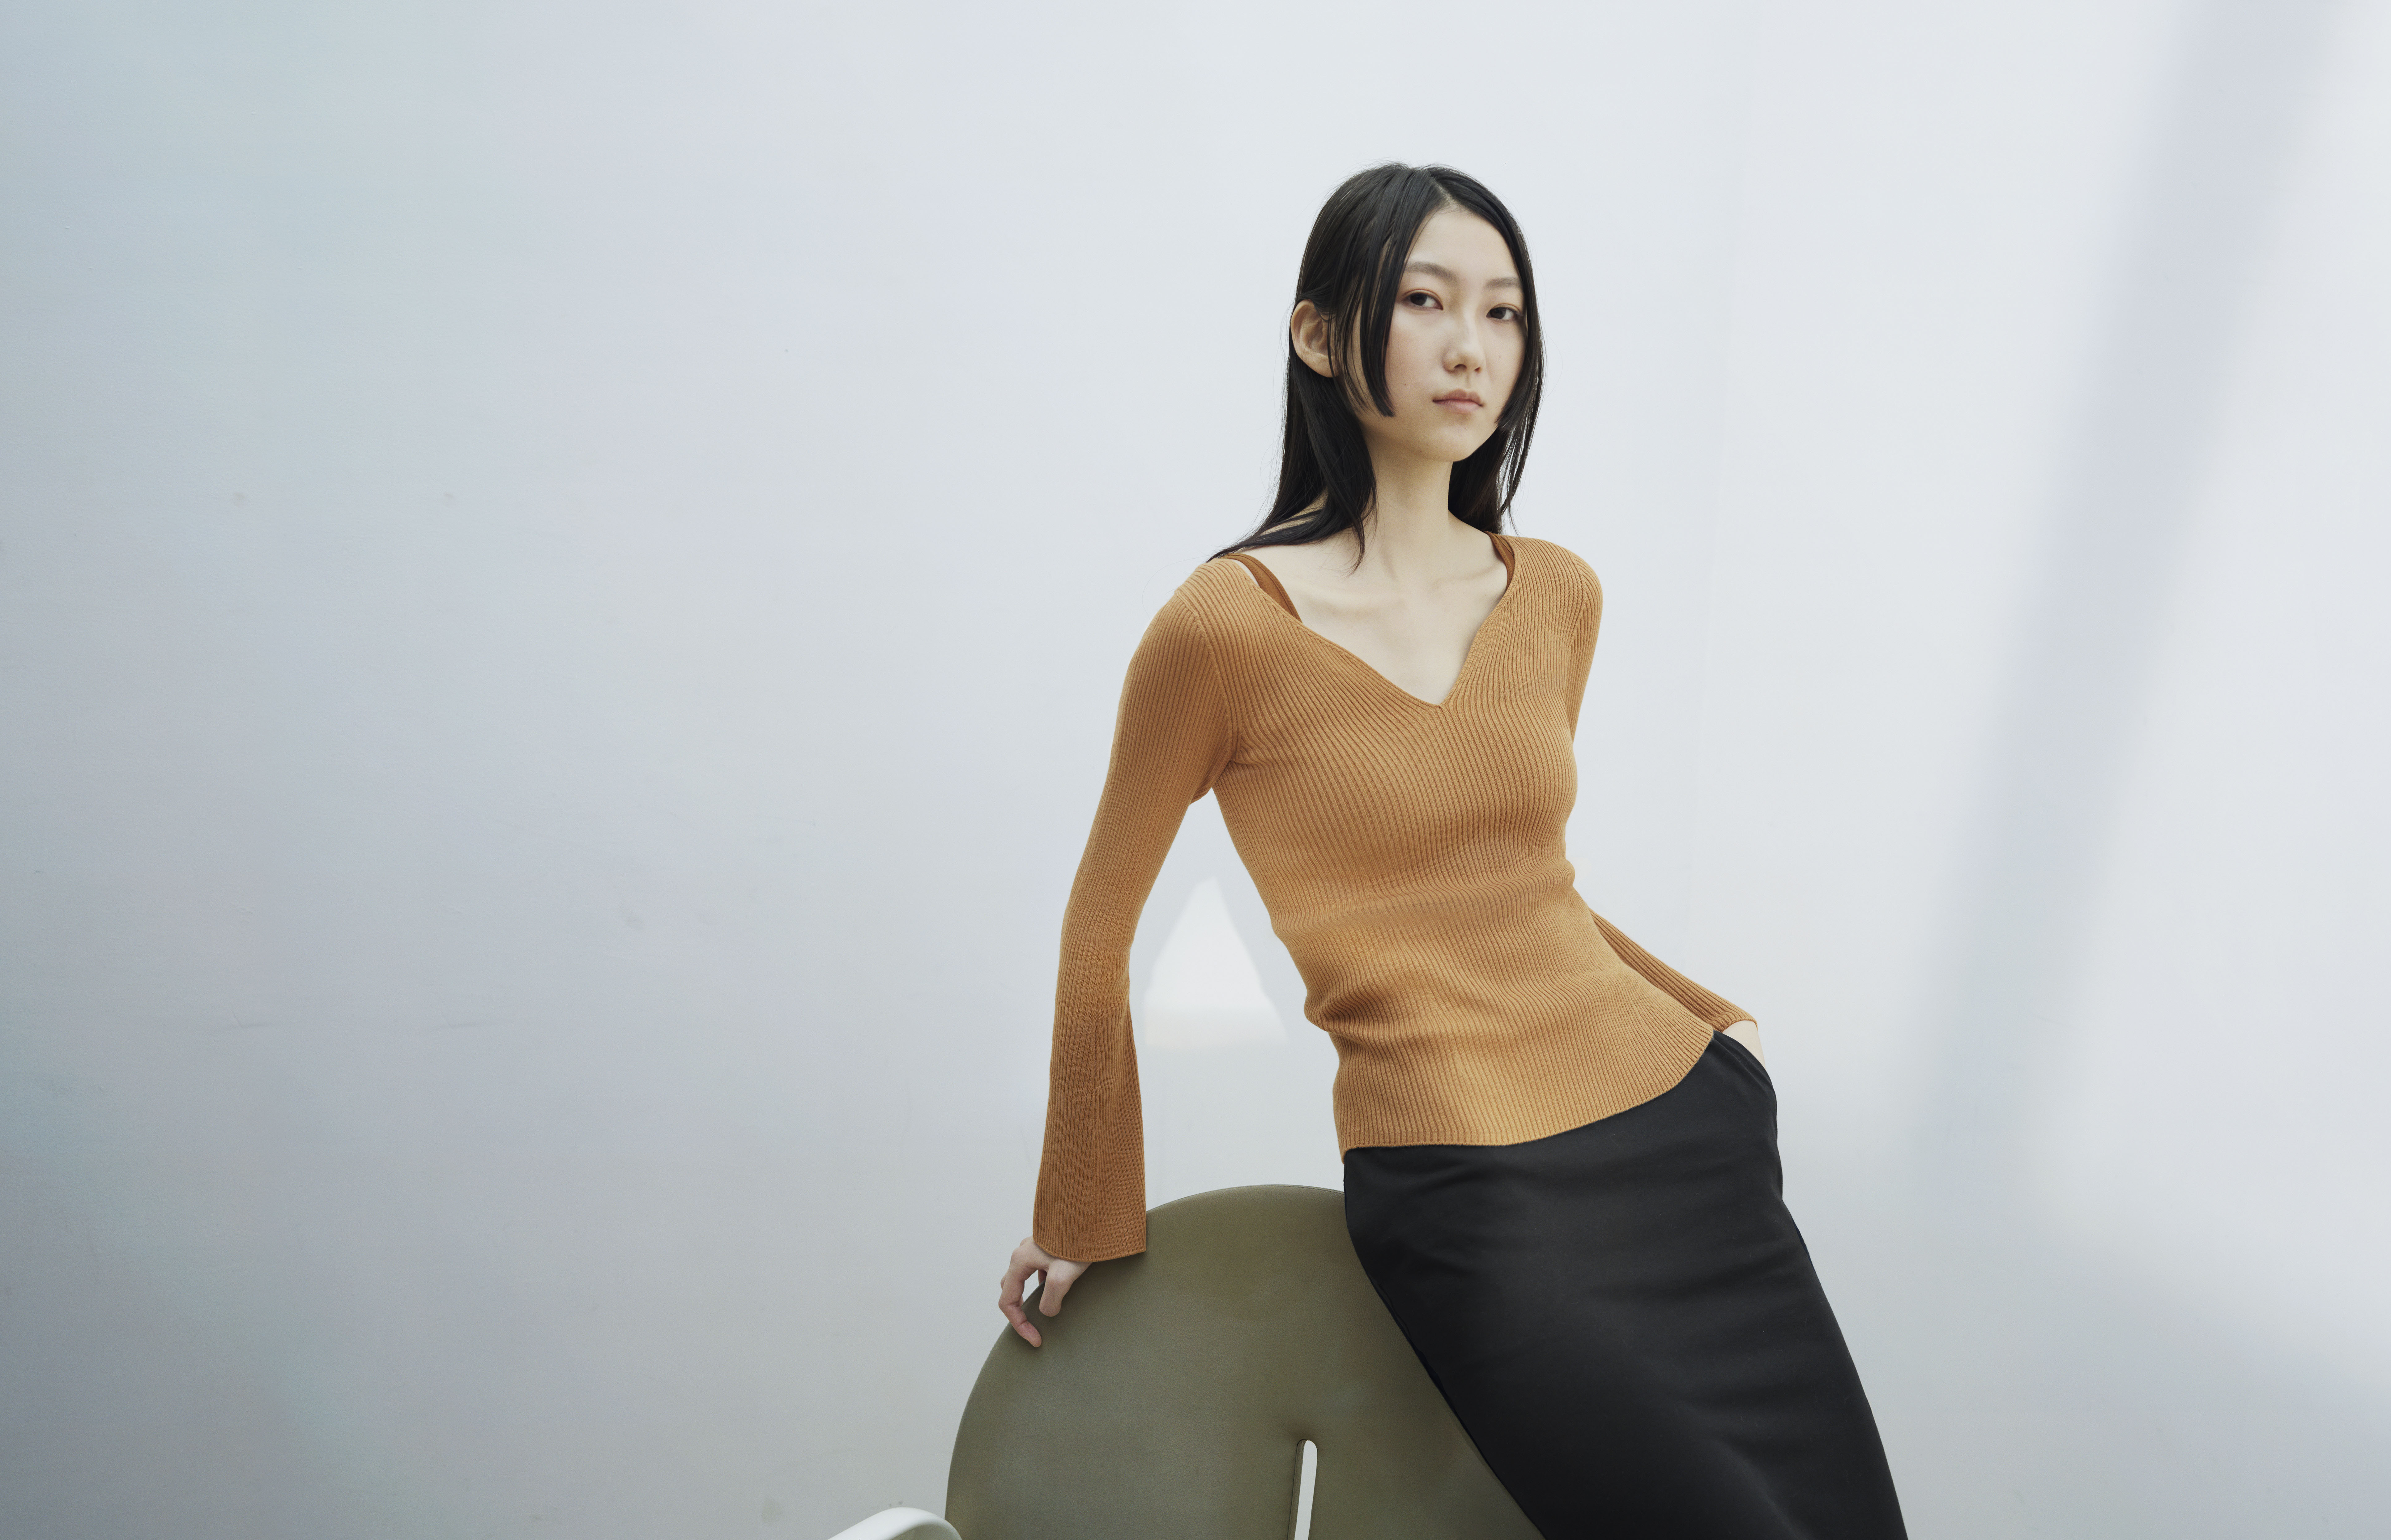 Designer Maiko Kurogouchi On UNIQLO X Mame Kurogouchi Collab